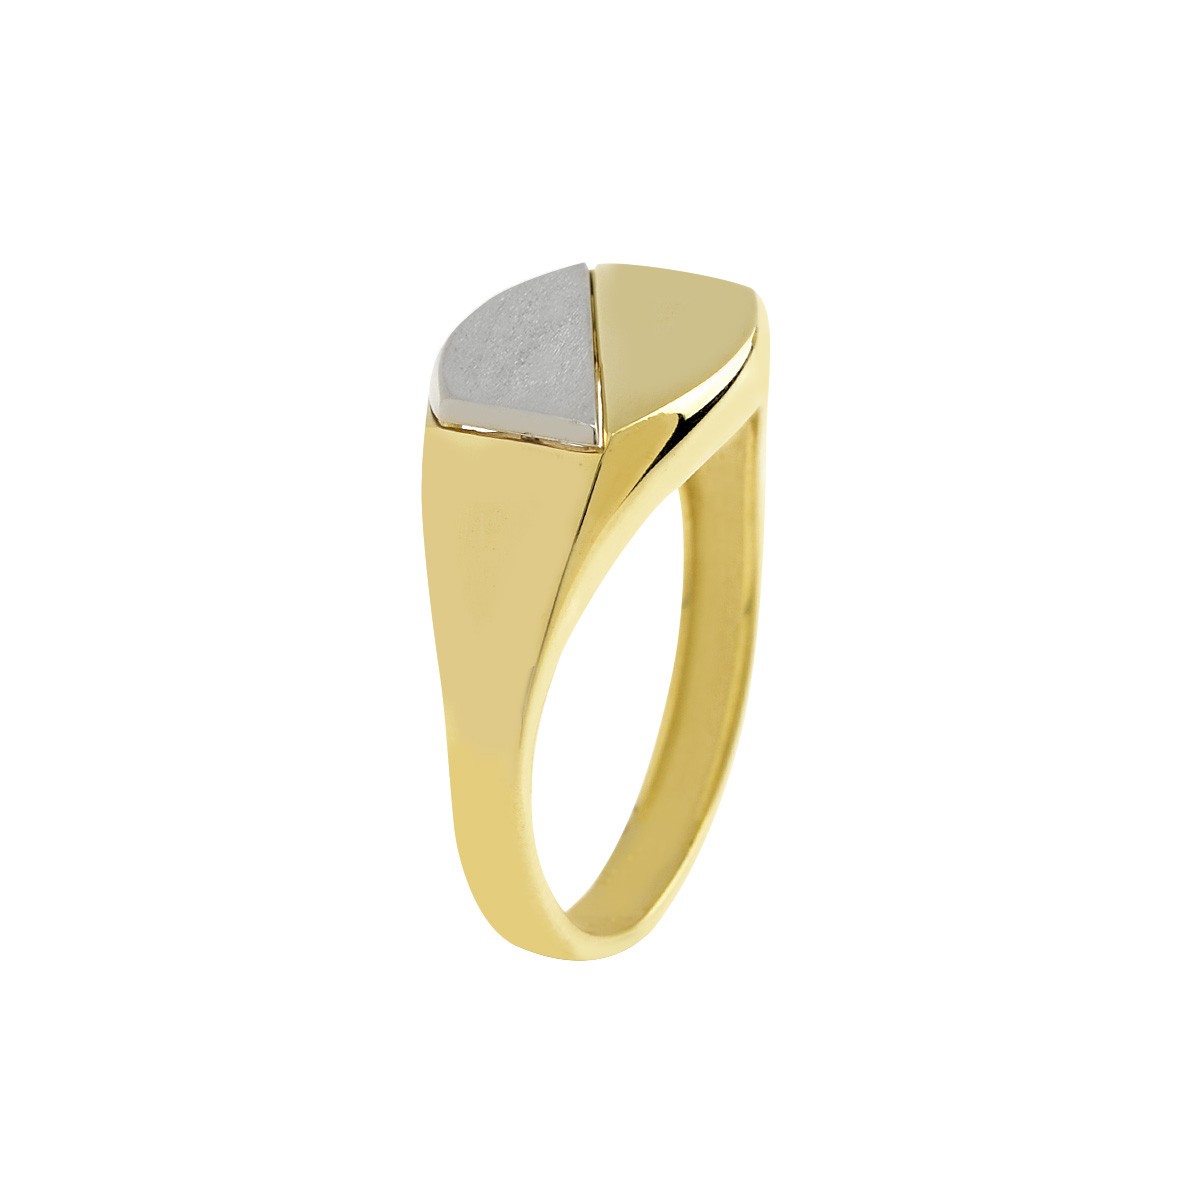 Δακτυλίδι Ανδρικό Χρυσό Κ9 με Πλάκα Κωδ: 401152